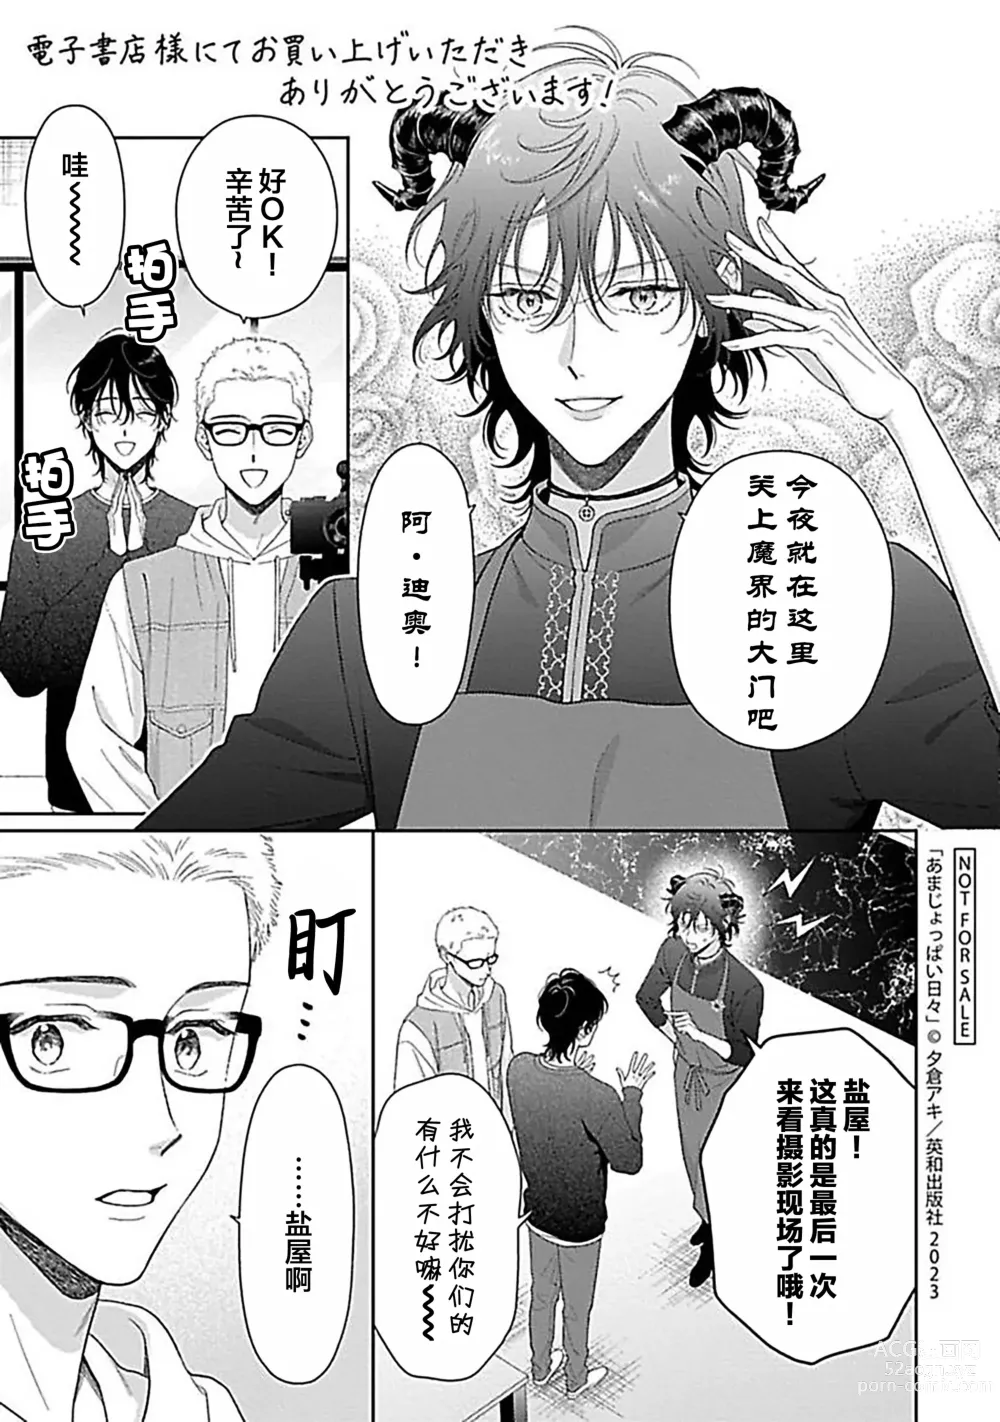 Page 229 of manga 甜咸交织的每一天